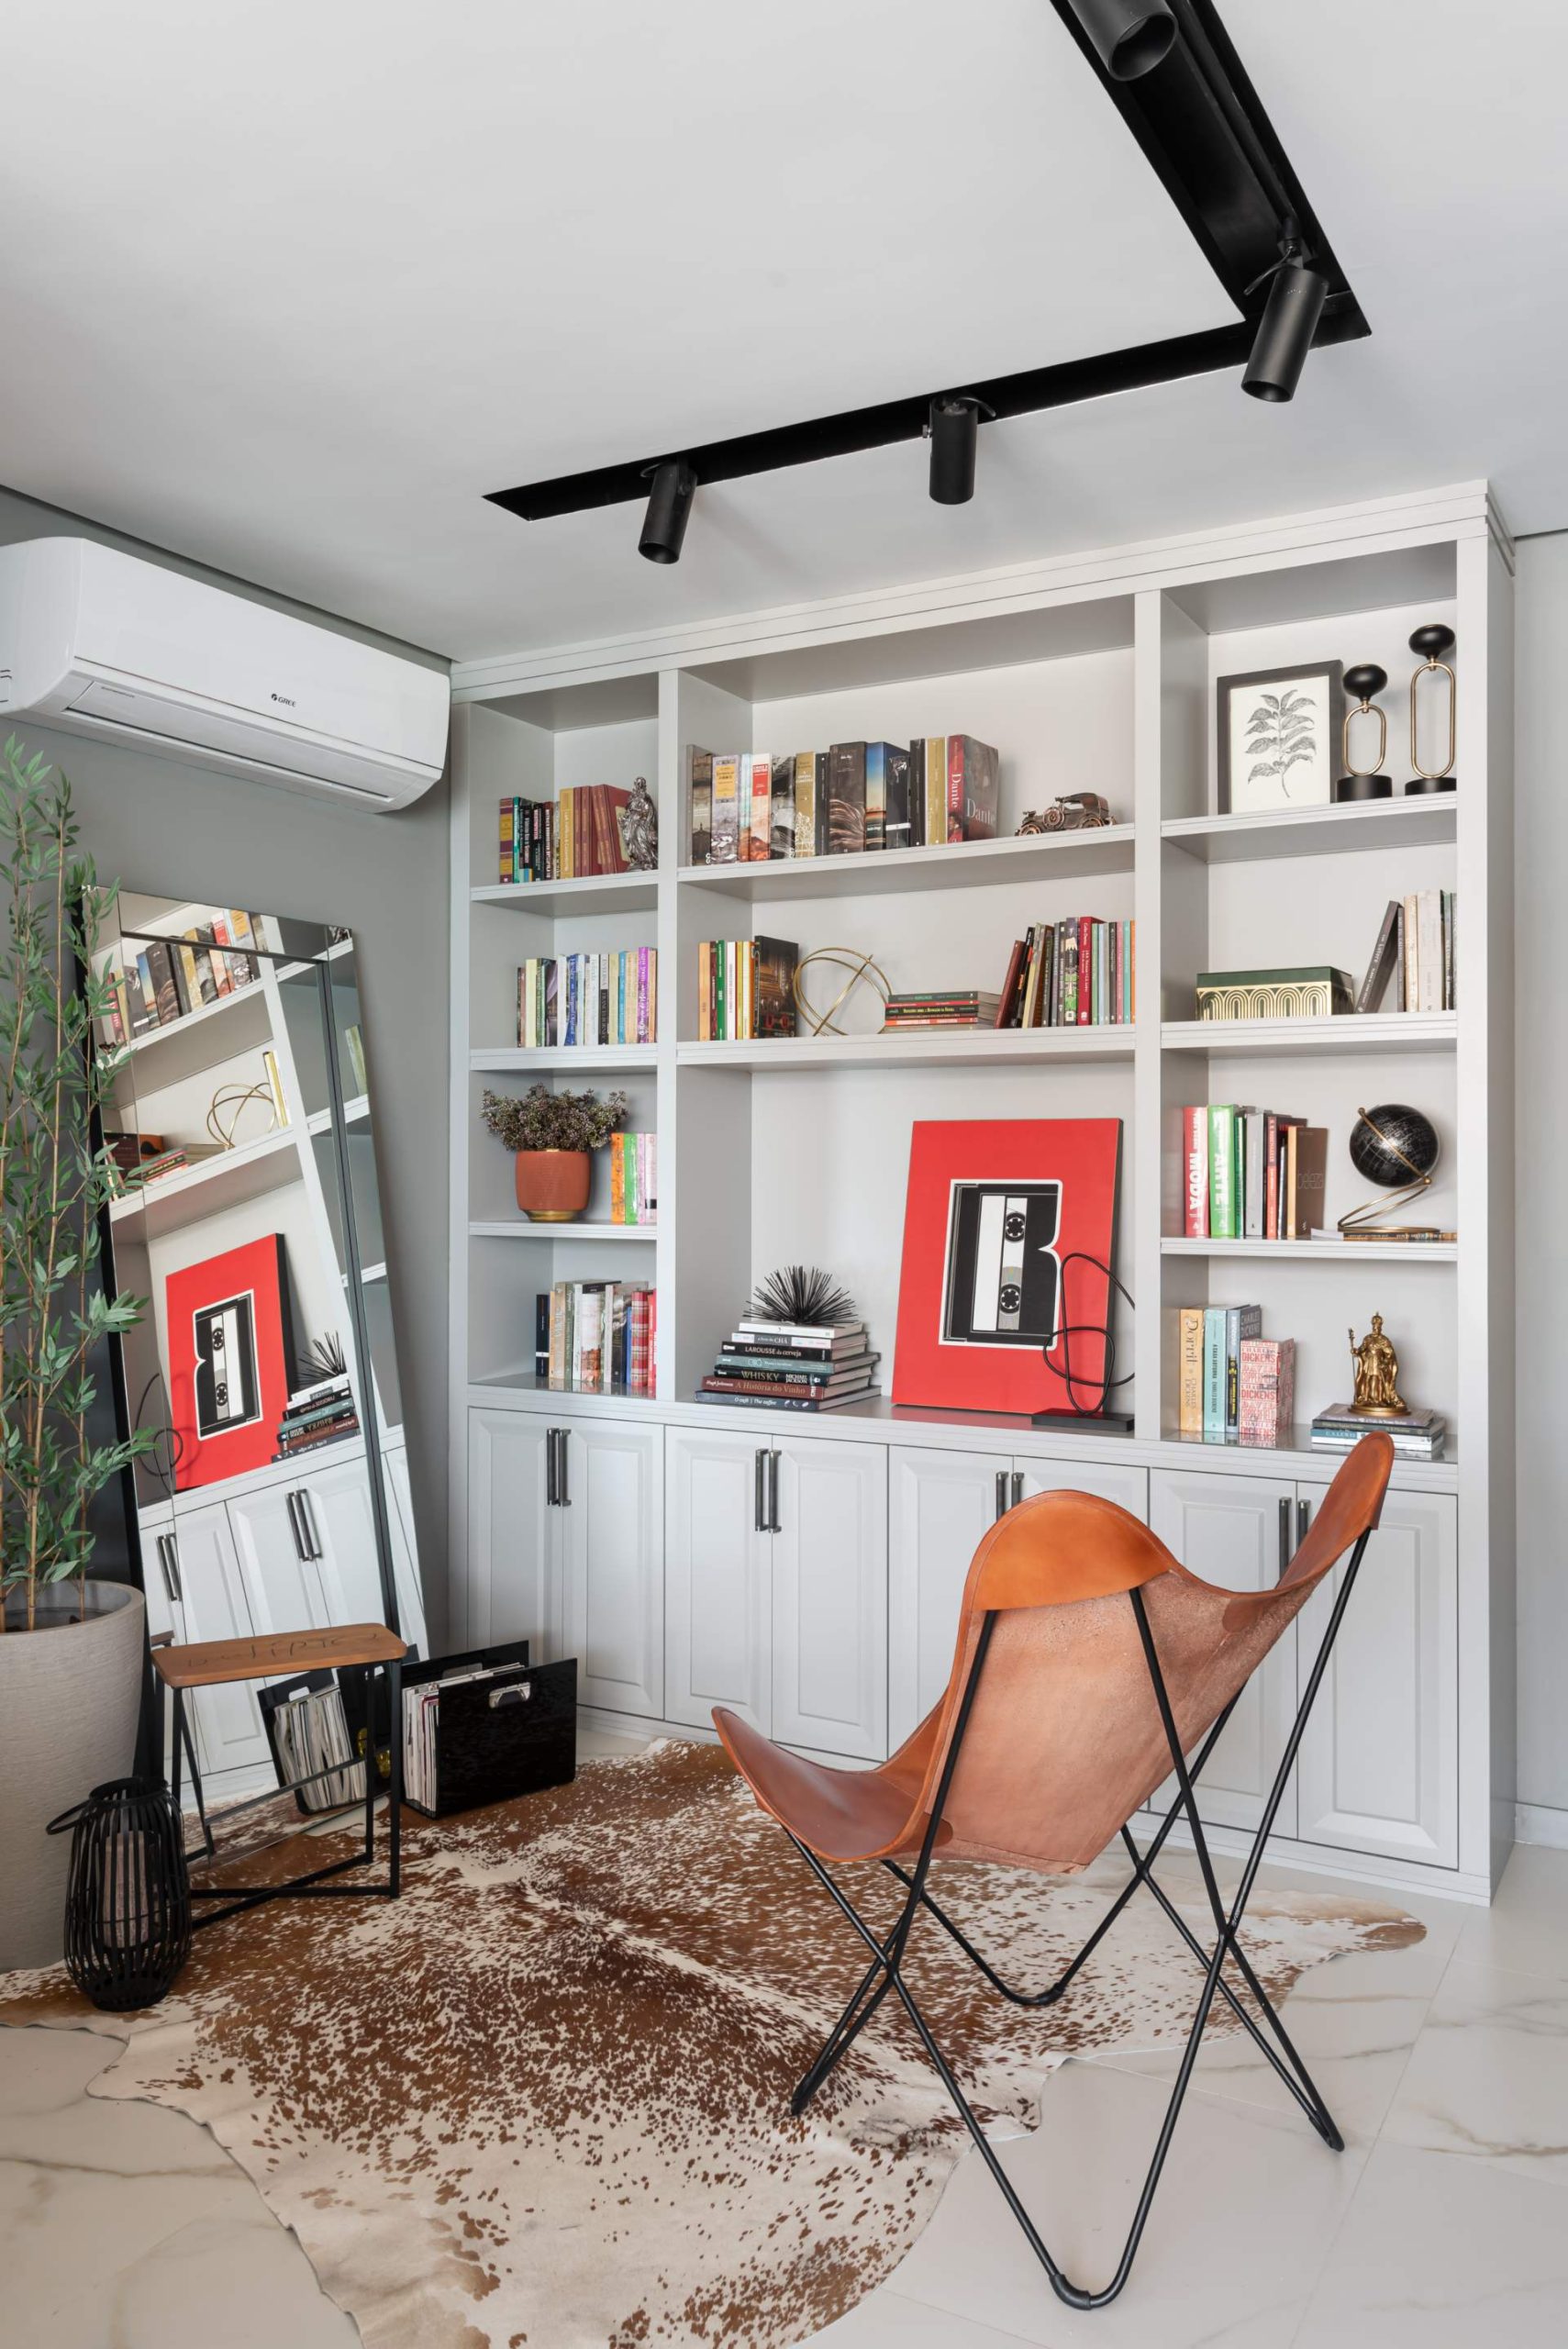 Ambiente para leitura com cadeira, estante com livros e objetos de decoração.